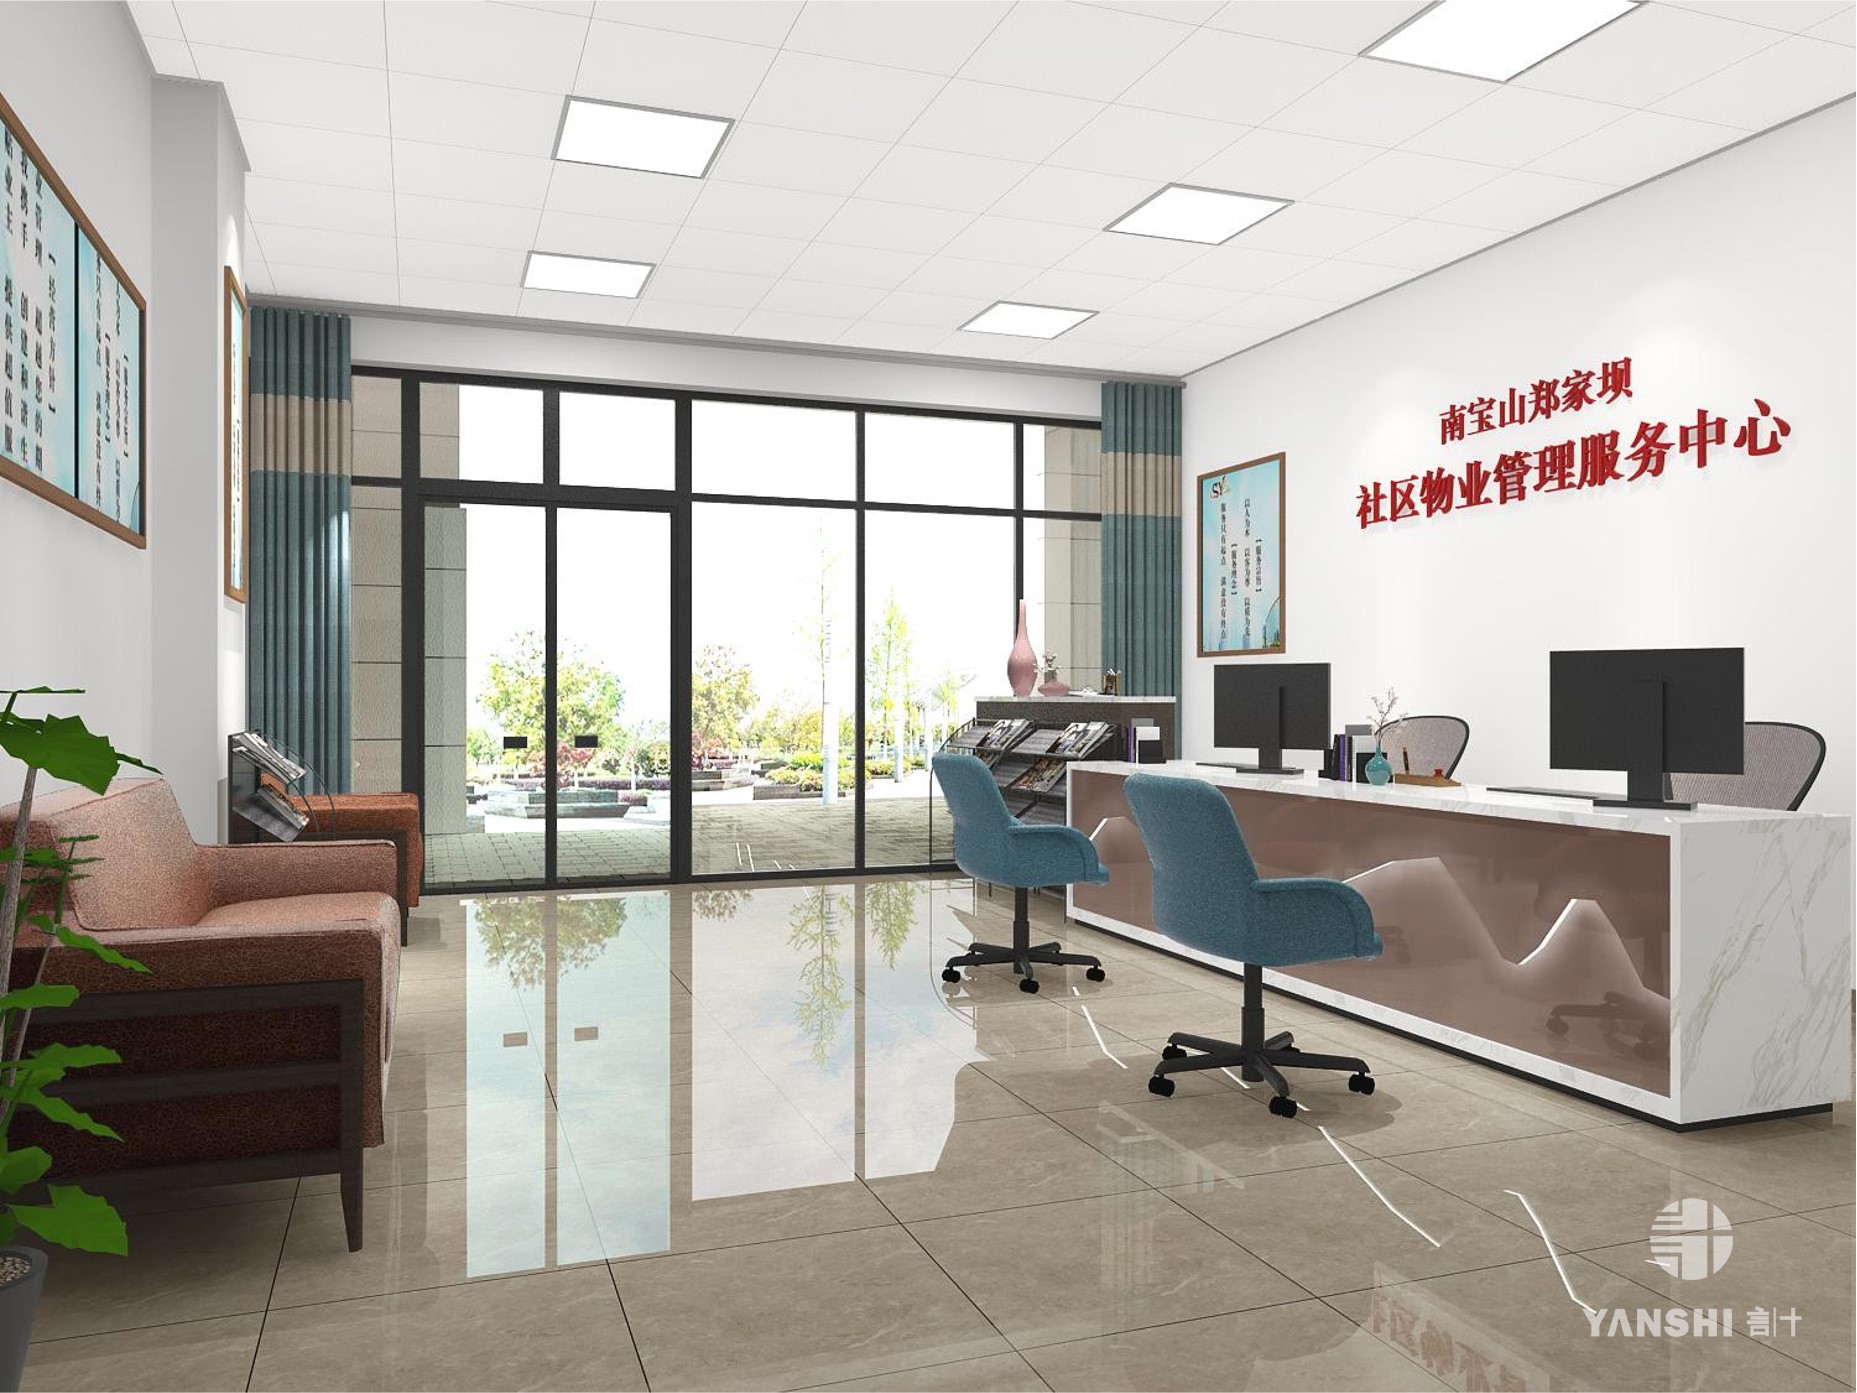 新中式党建中心 - 效果图交流区-建e室内设计网